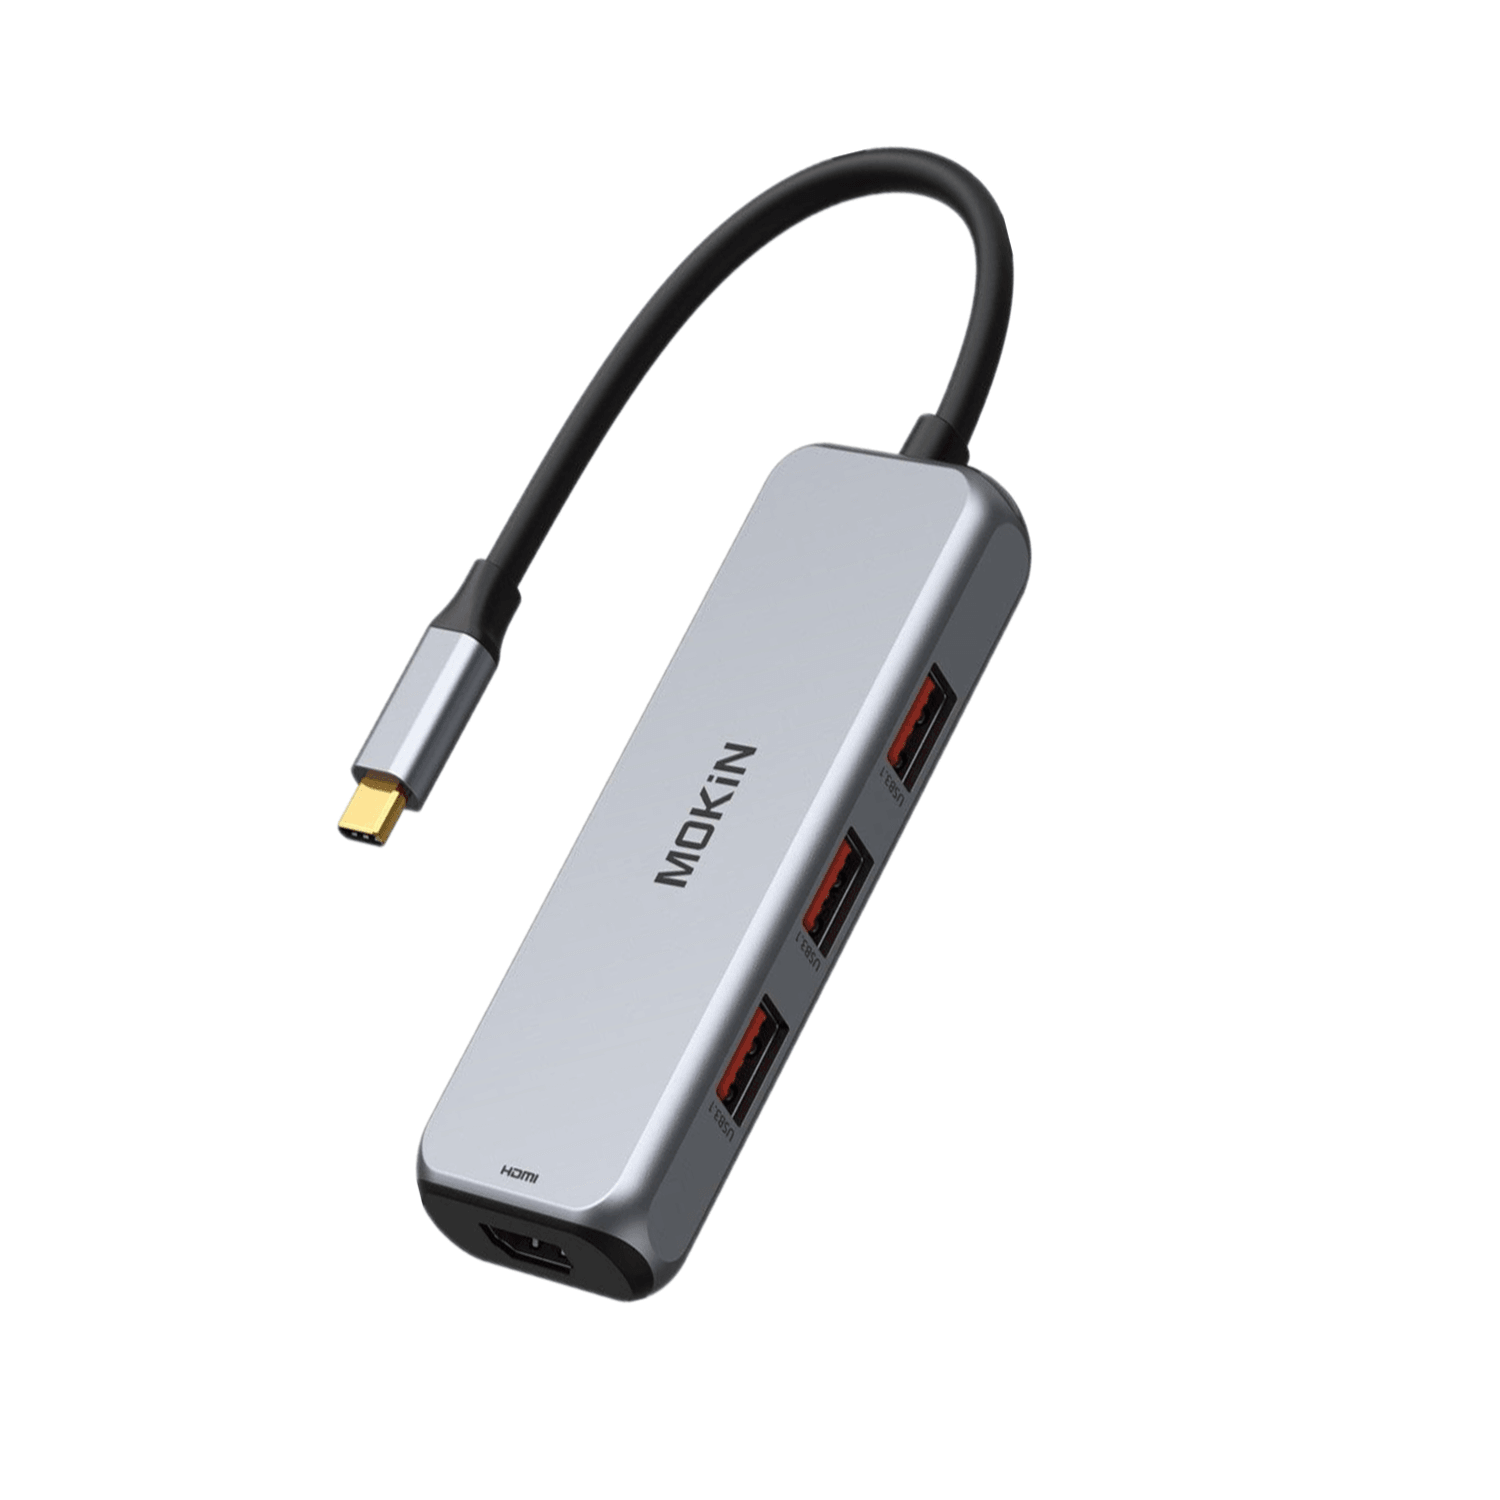  MOKiN Adaptador HDMI USB C Hub para MacBook Pro/Air, adaptador  USB C 7 en 1 con HDMI, lector de tarjetas SD/TF, puerto de datos USB C, 100  W PD y 2